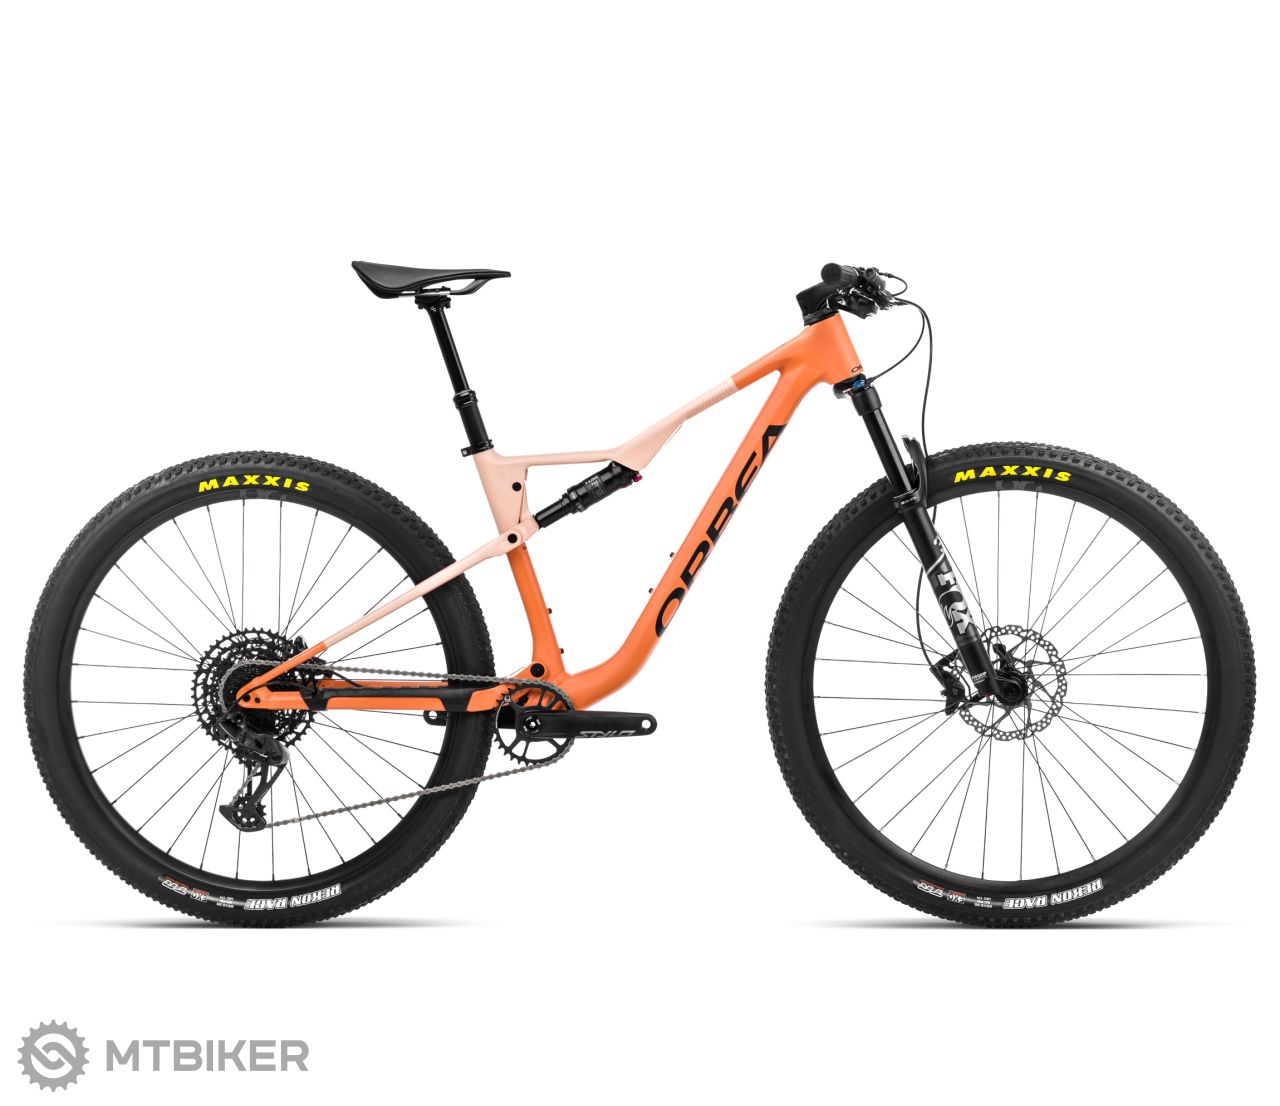 Orbea OIZ H20 29 bike, apricot orange/limestone beige